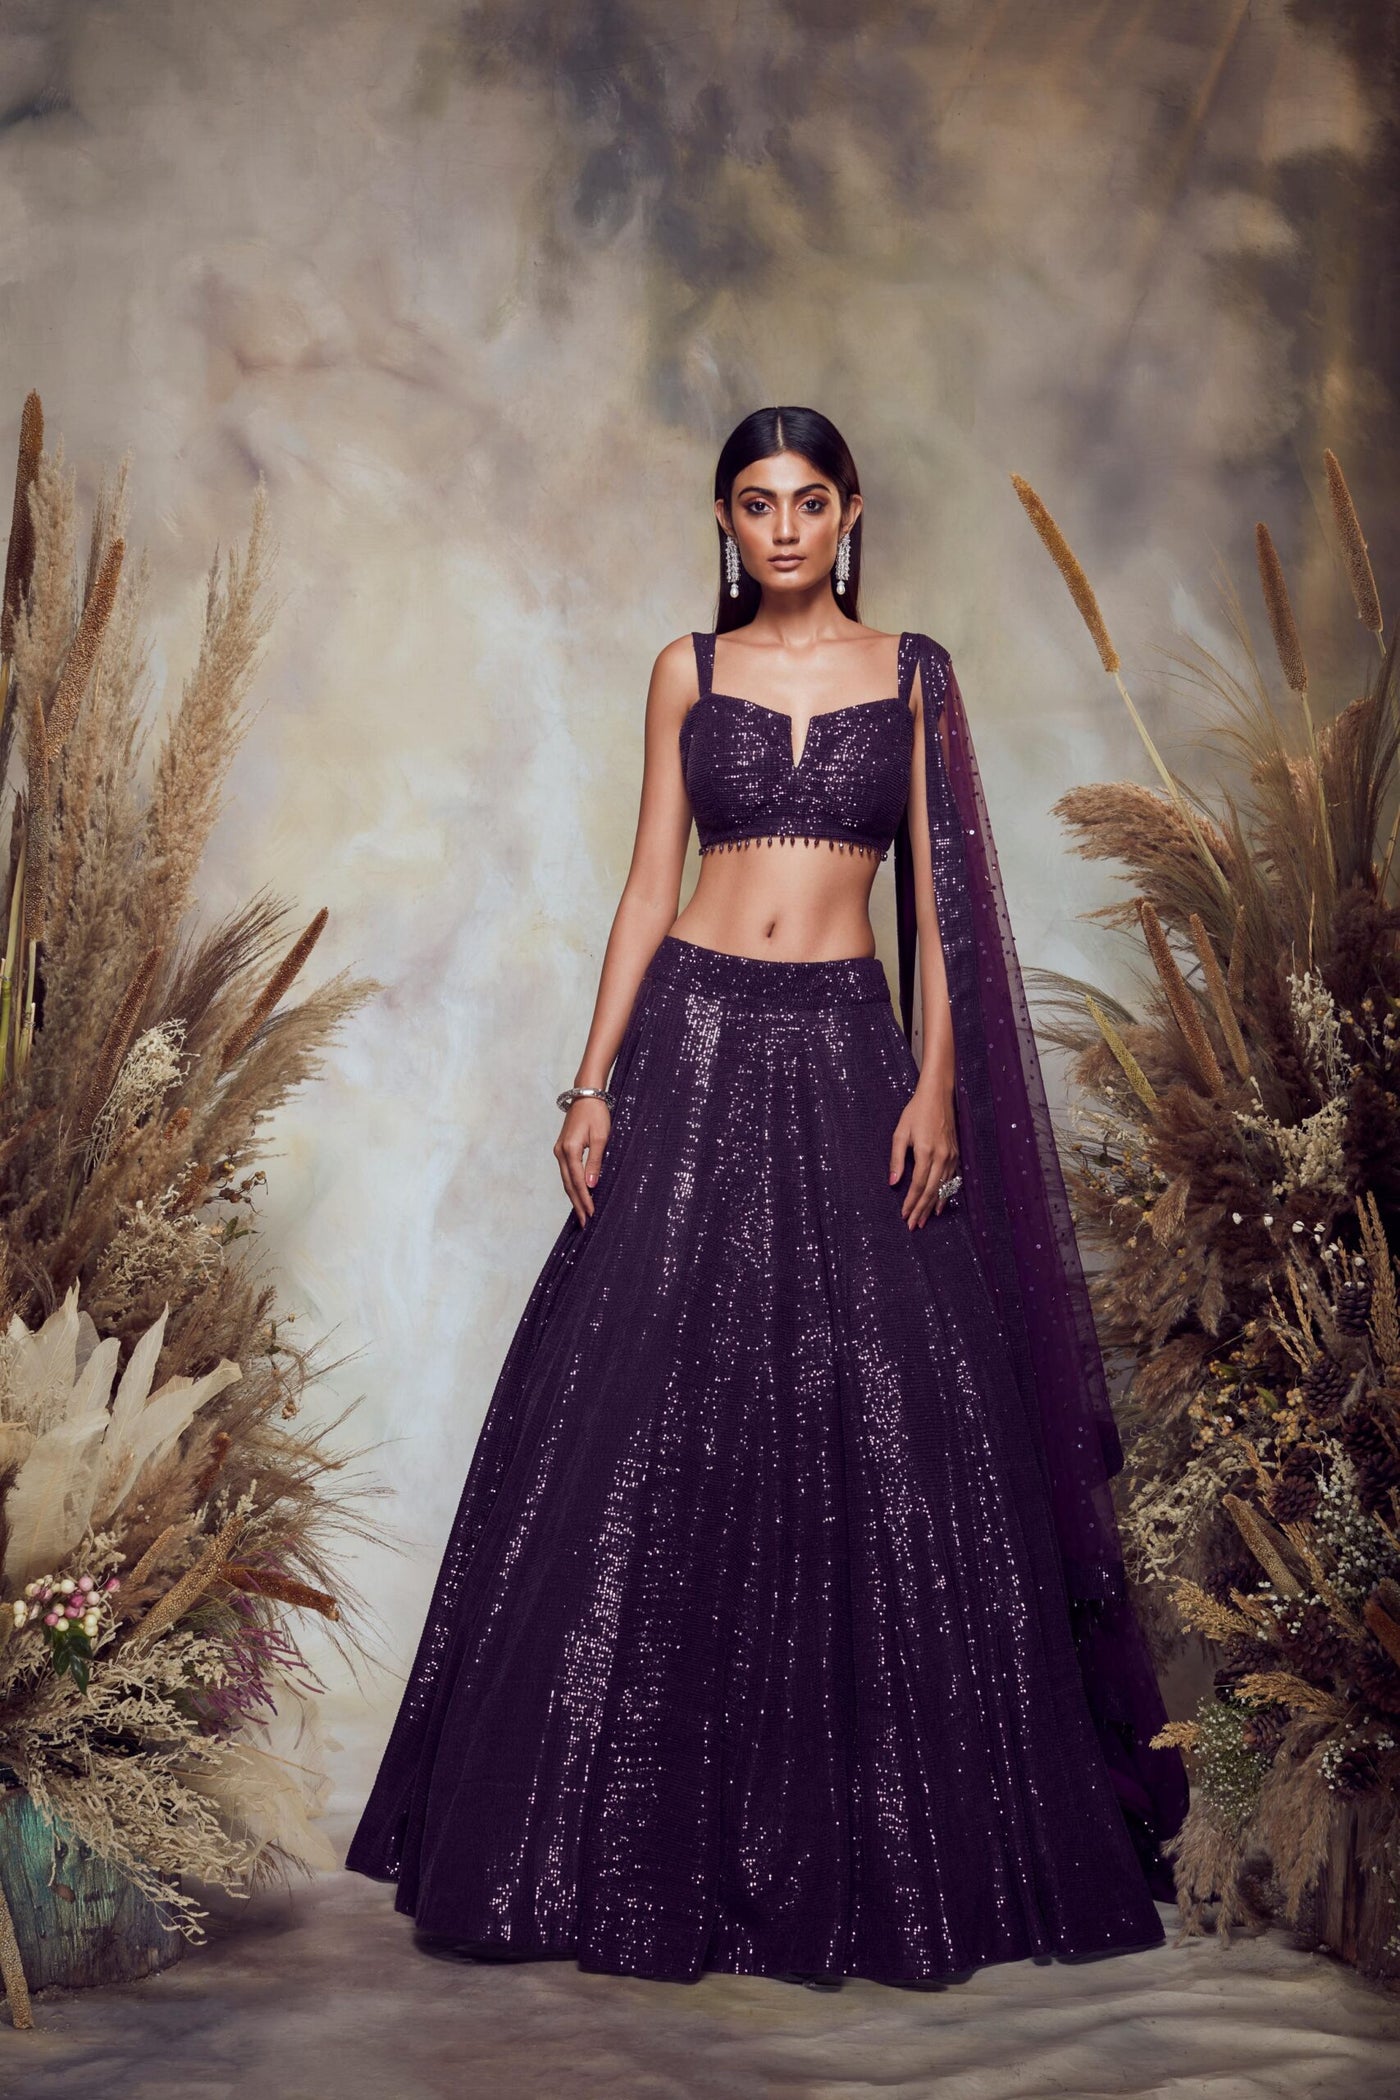 Indian Designer Lehenga Choli Skedsmo Norway Latest Wedding Dresses India